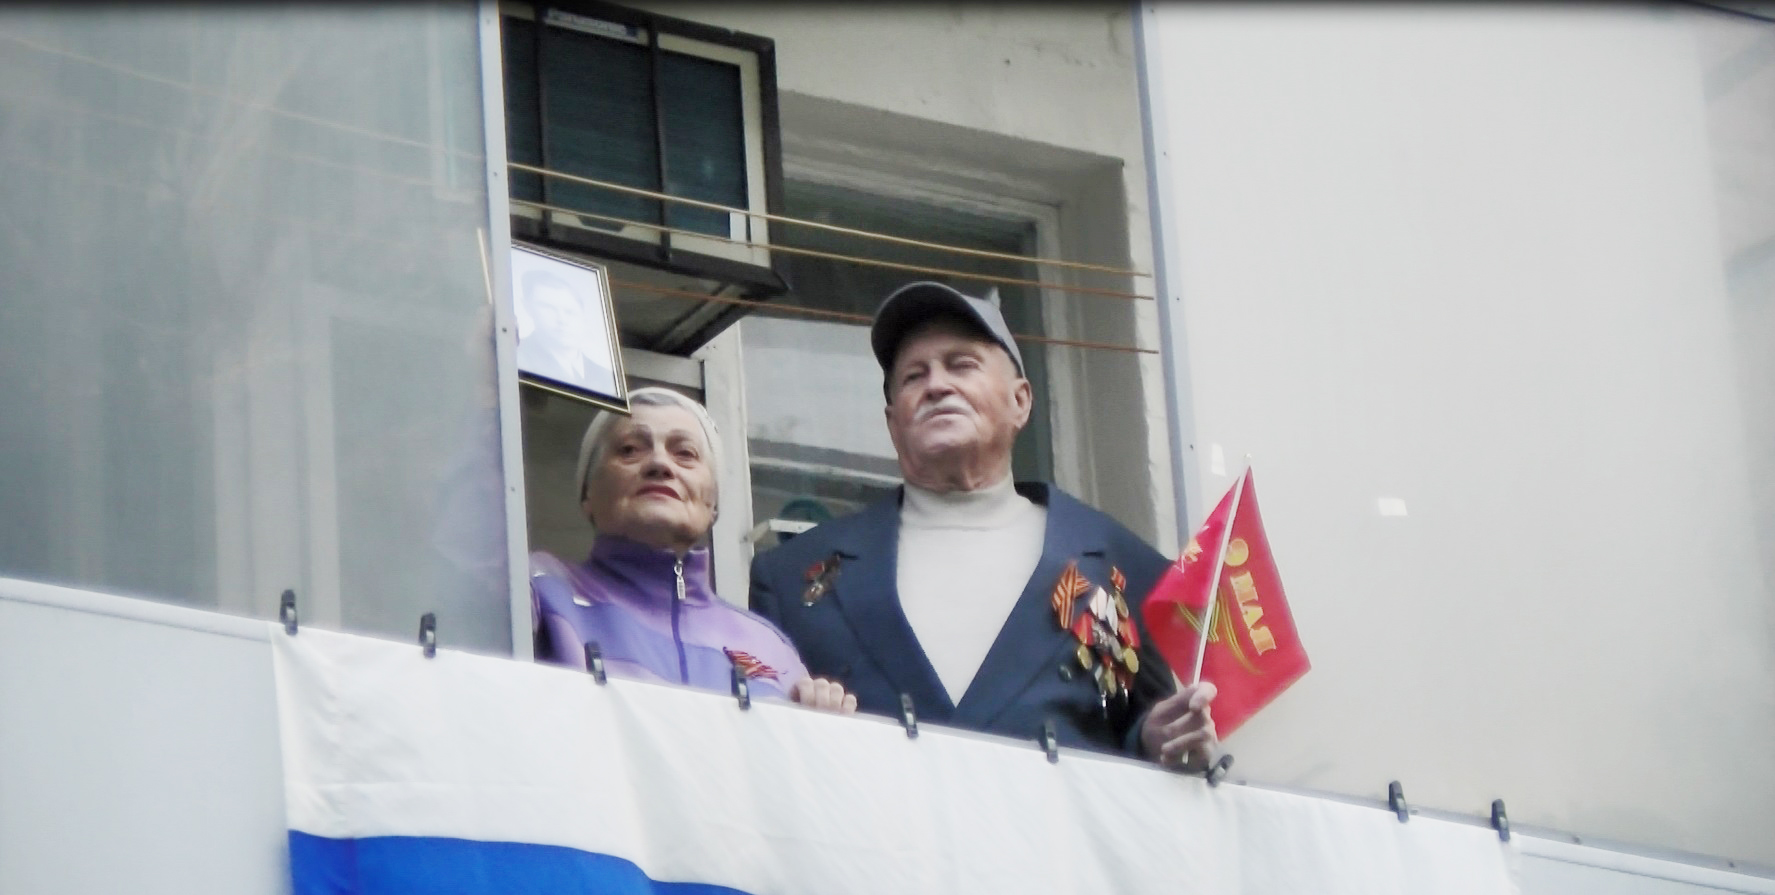 Армавирцы исполнили песню "День победы"